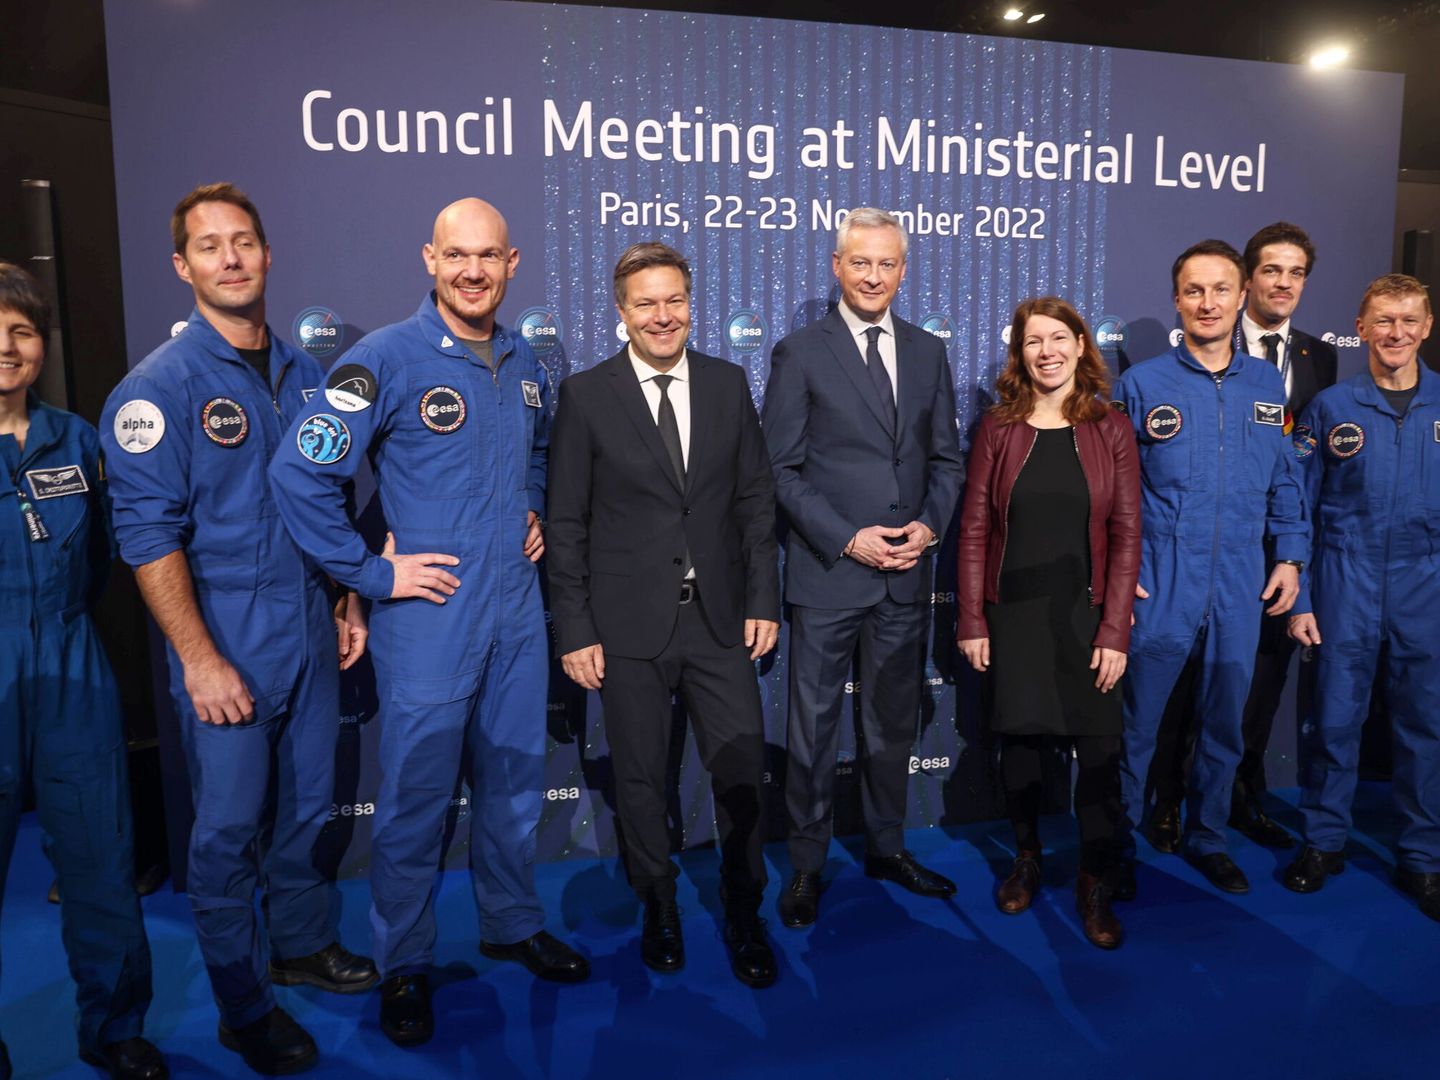 Los ministros alemán y francés Robert Habeck y Bruno Le Maire posan con la última hornada de astronautas antes de la selección de hoy. (EFE)